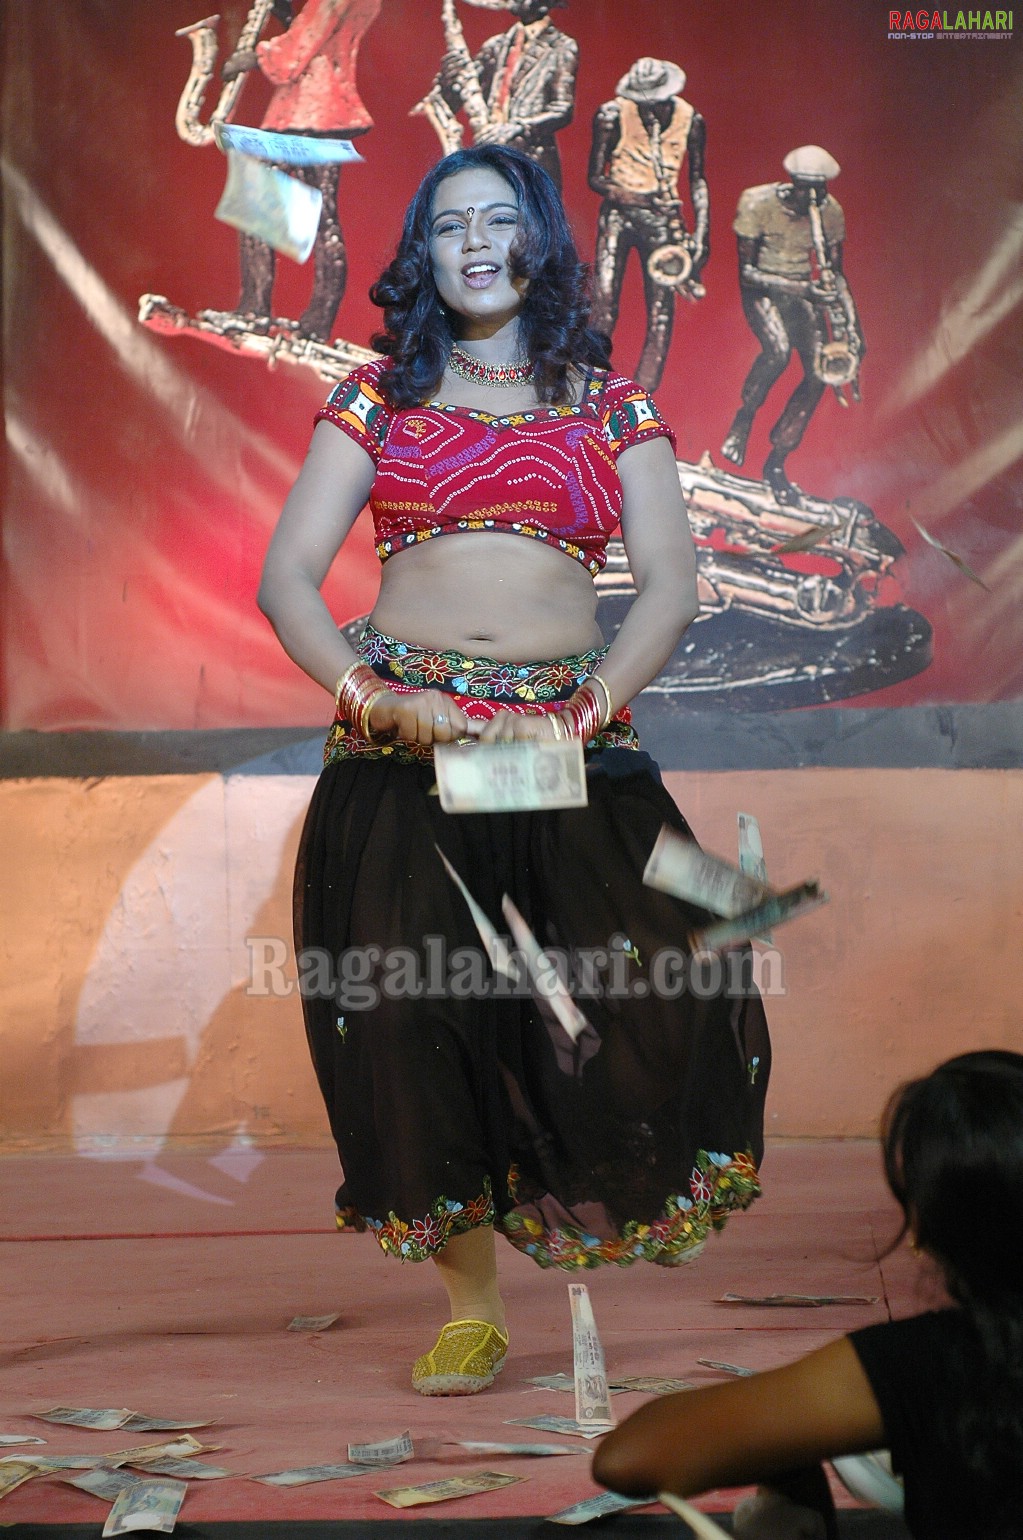 Abhinaya Sri